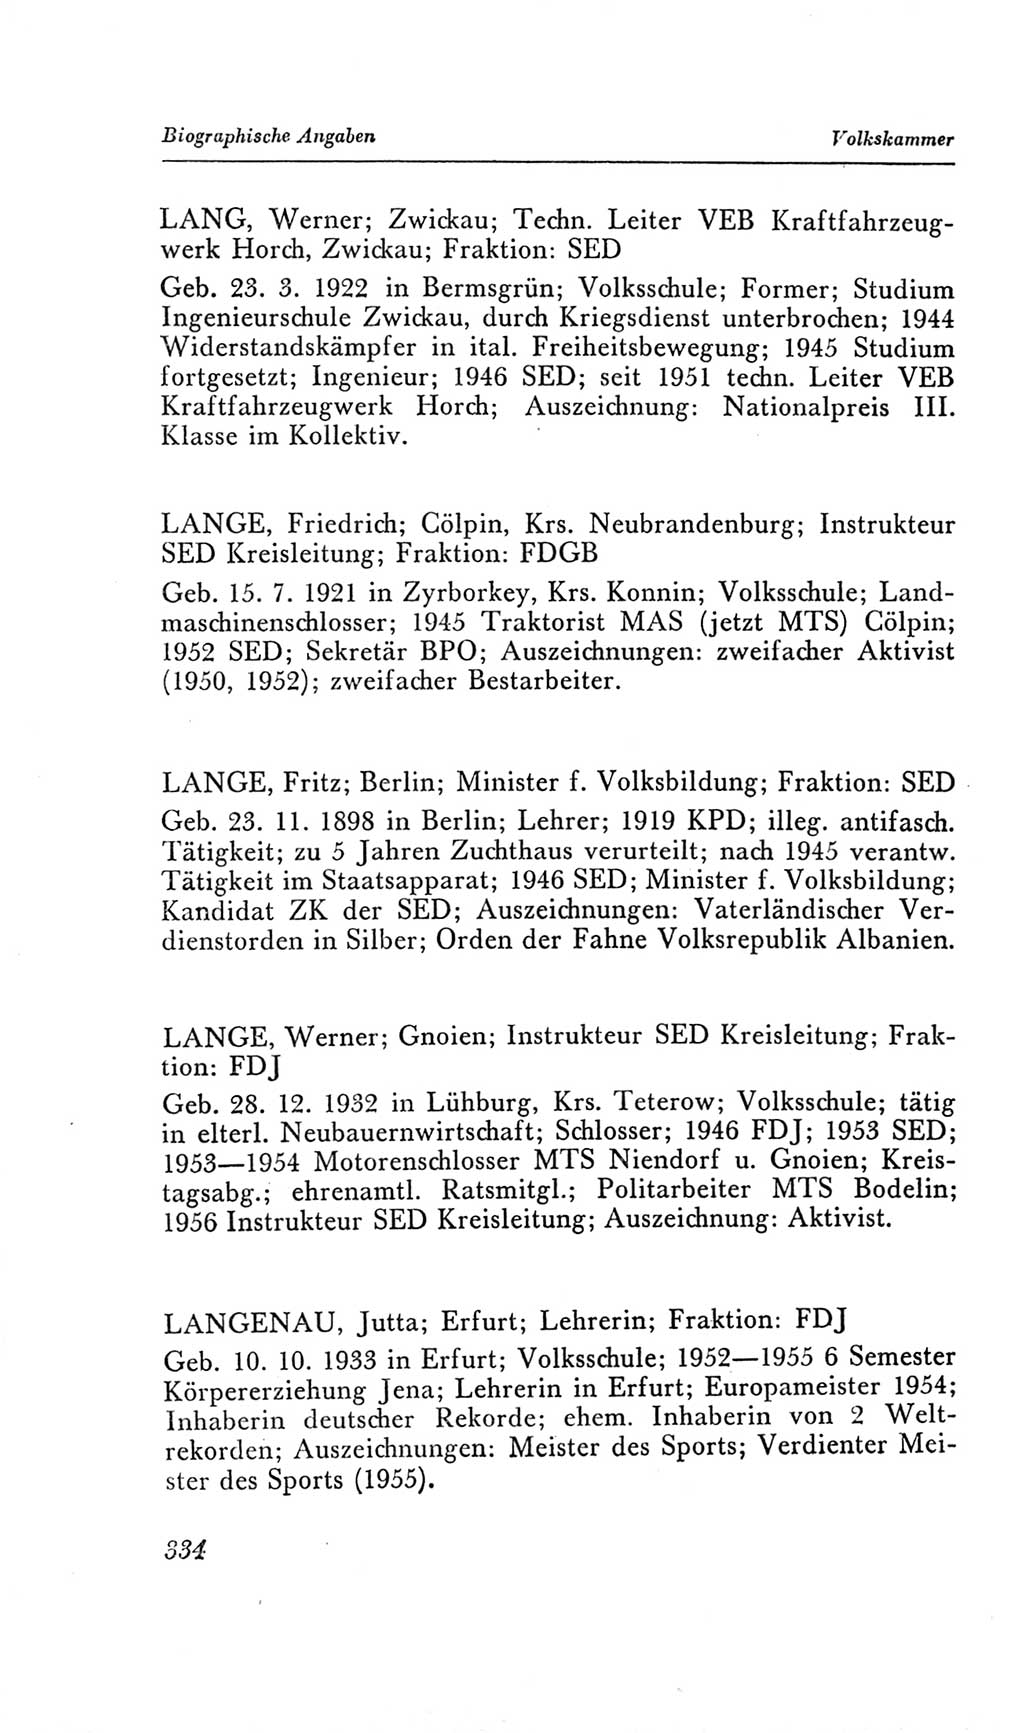 Handbuch der Volkskammer (VK) der Deutschen Demokratischen Republik (DDR), 2. Wahlperiode 1954-1958, Seite 334 (Hdb. VK. DDR, 2. WP. 1954-1958, S. 334)